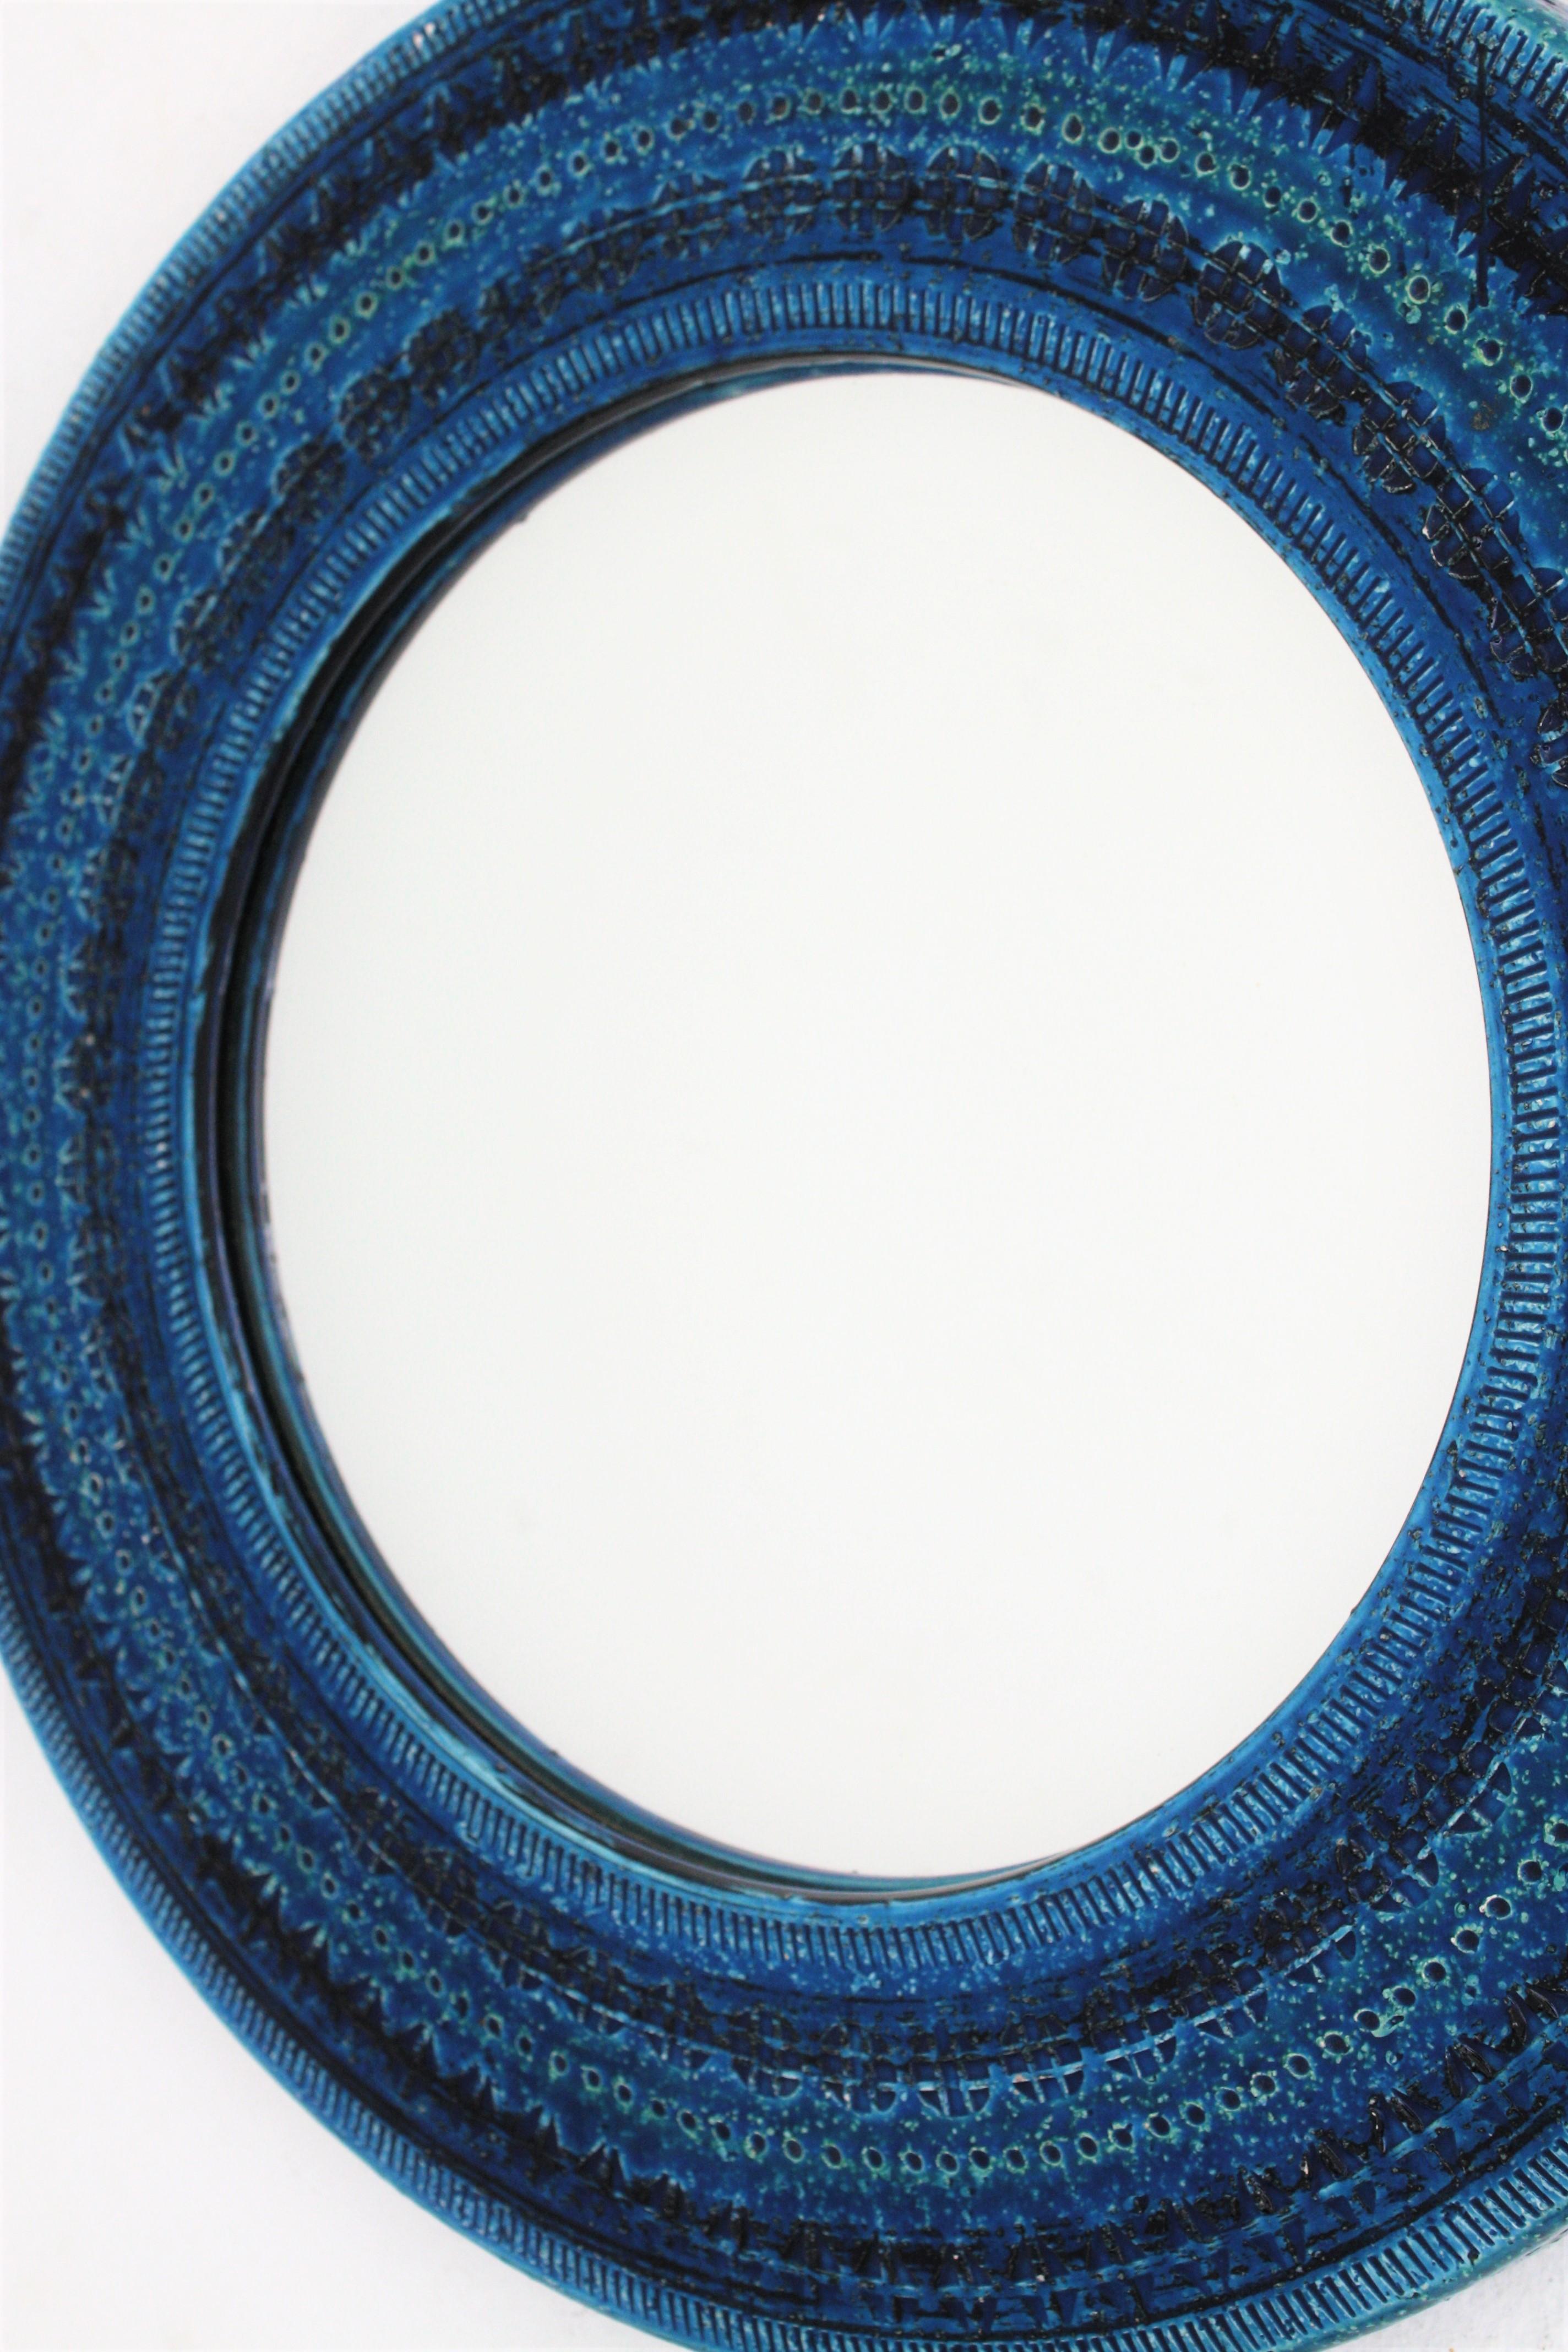 Italian Midcentury Aldo Londi Bitossi Rimini Blue Glazed Ceramic Round Mirror  3